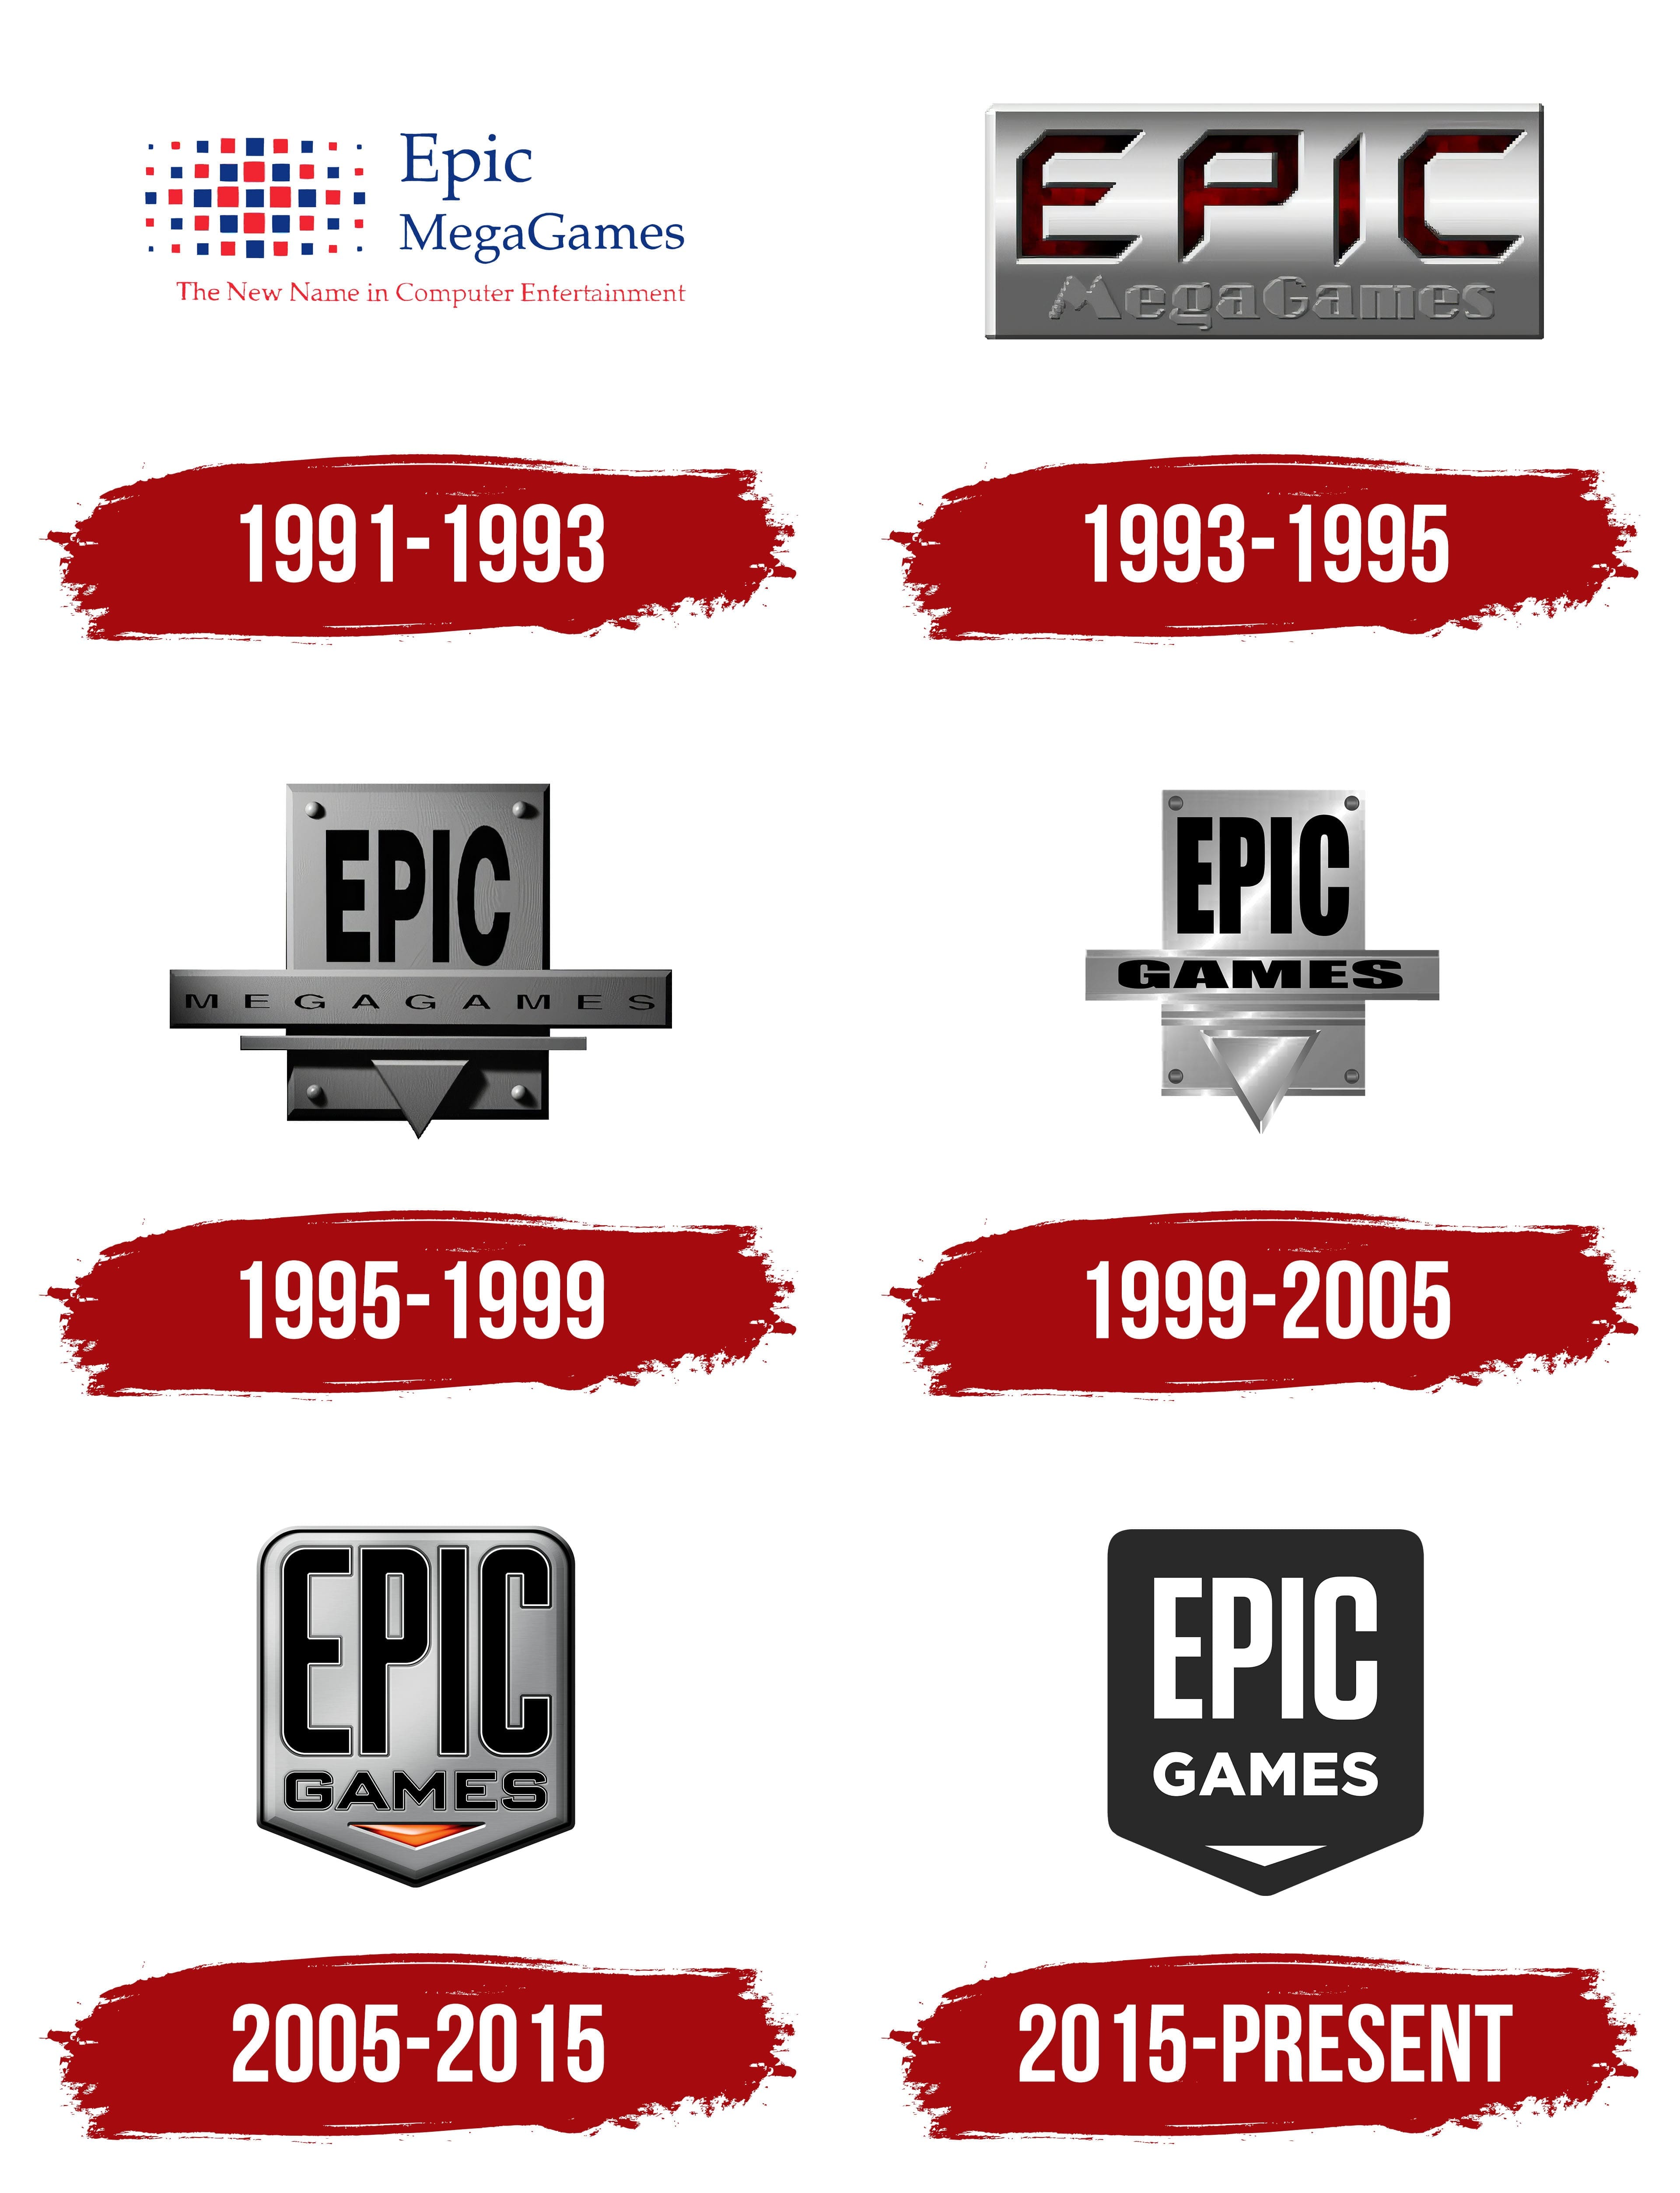 Logo của Epic Games có ý nghĩa gì? Cùng tìm hiệu về lịch sử và thương hiệu của hãng qua bức ảnh PNG đầy chất lượng này!